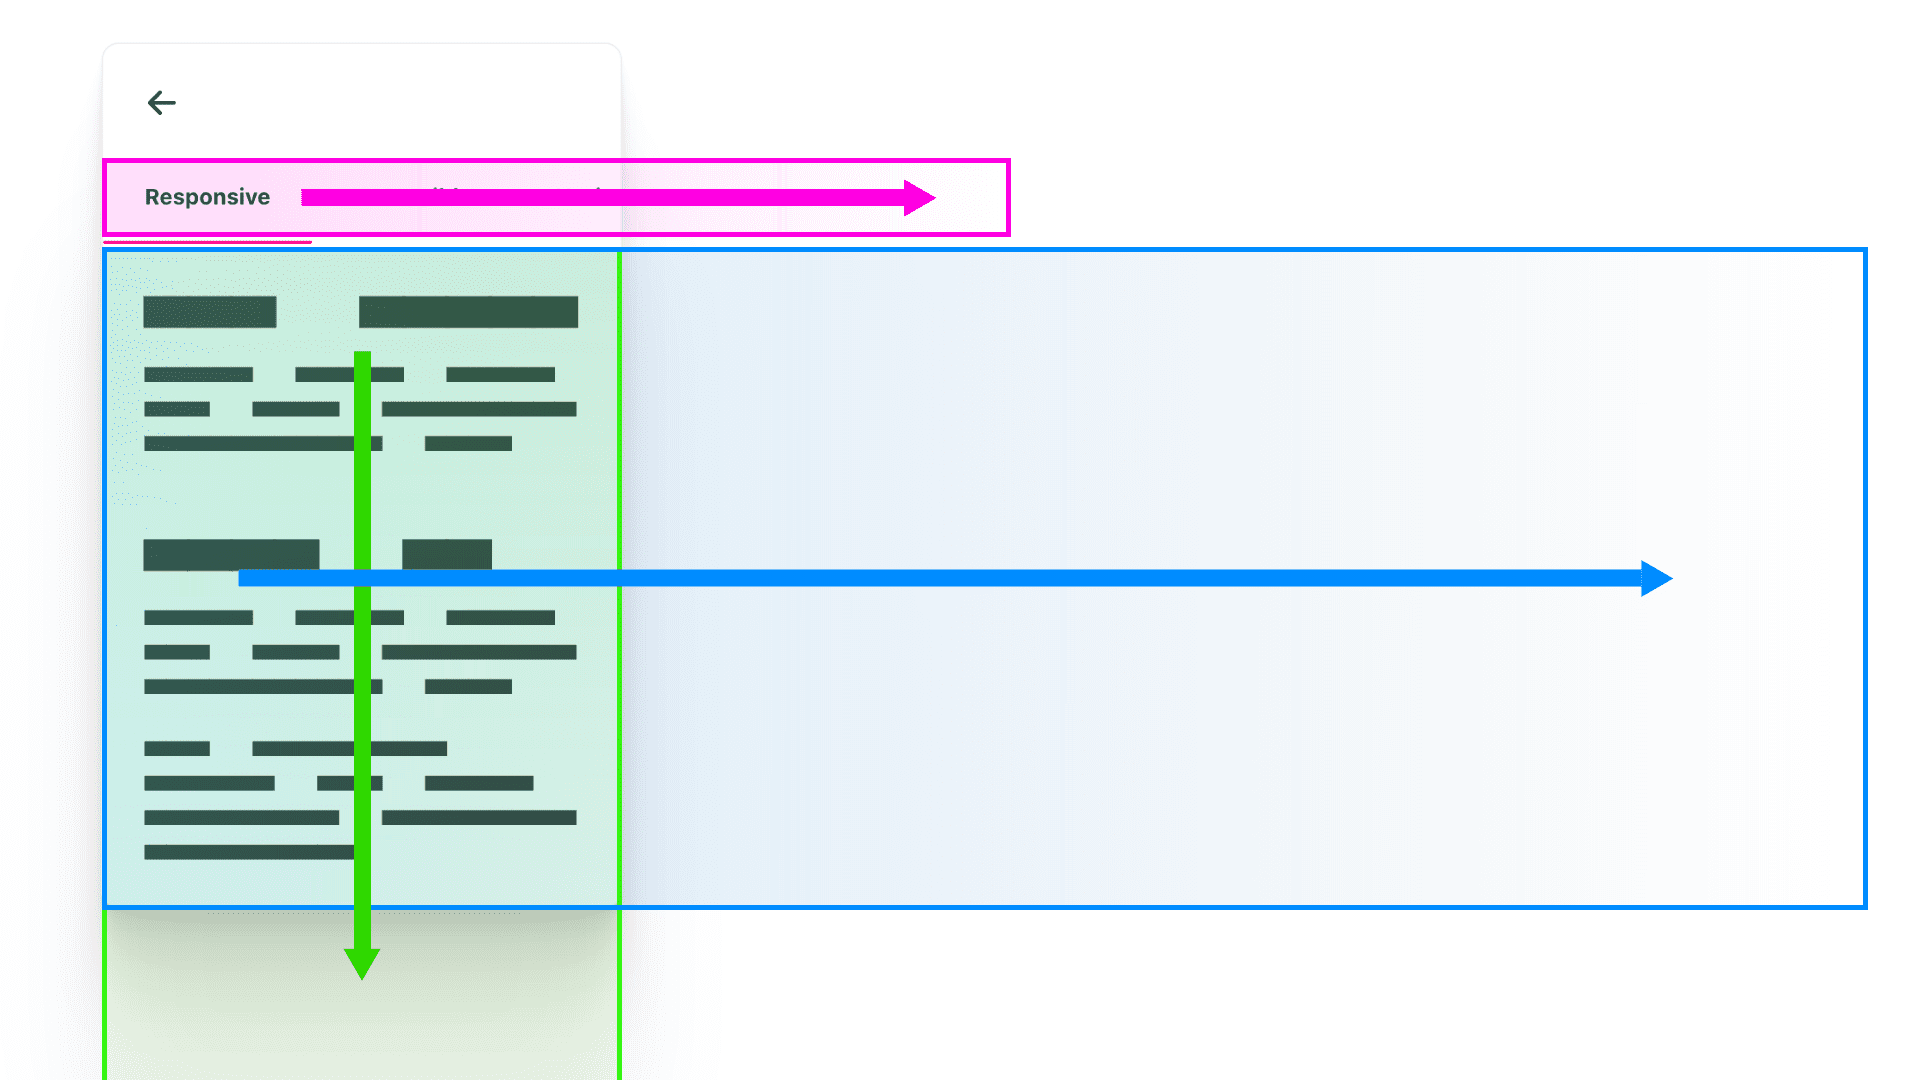 スクロール範囲の輪郭を描き、スクロールする方向を示す矢印の該当色が付いた3つのカラフルなボックス。